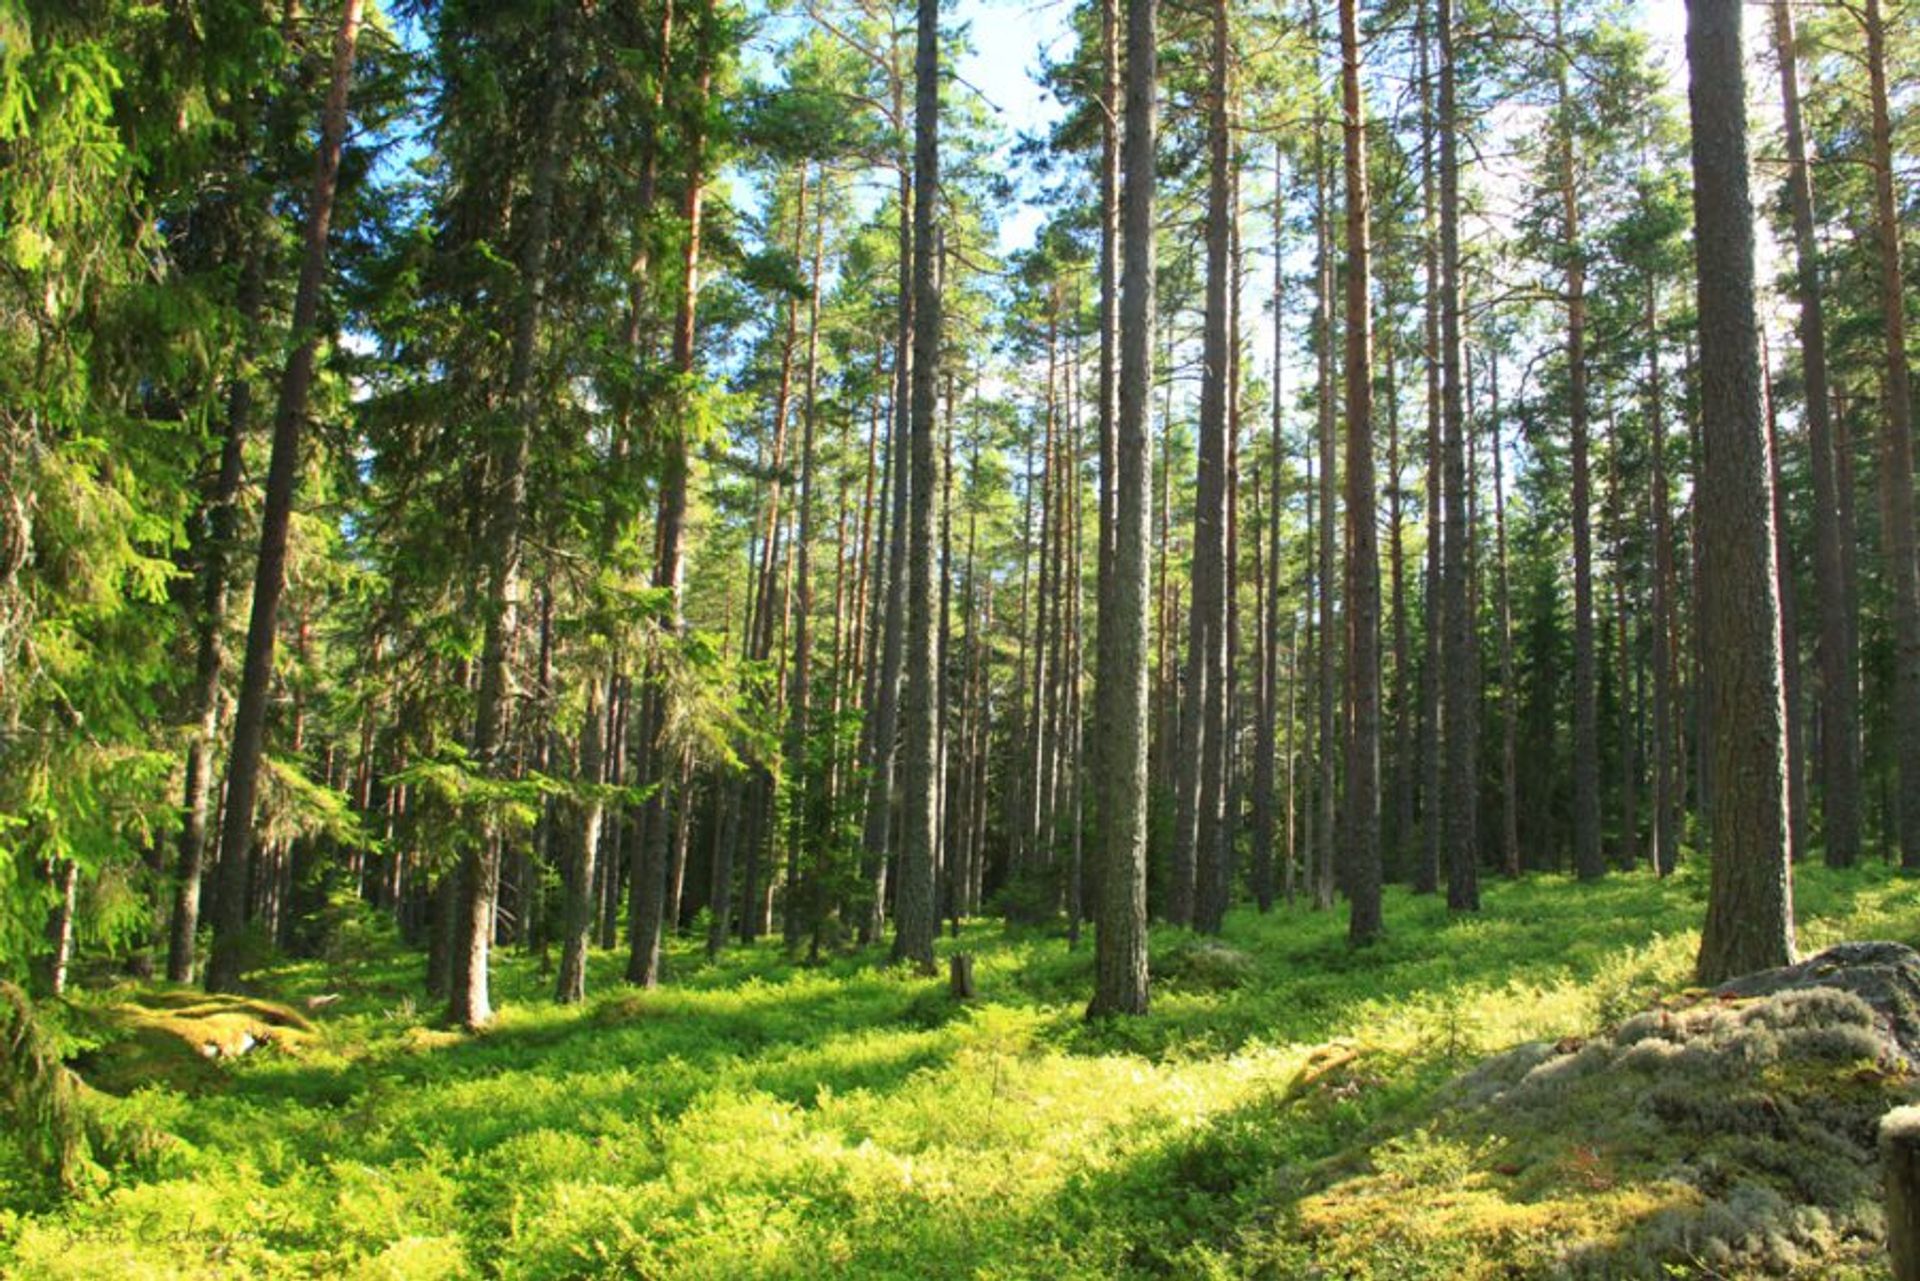 Skuleskogen national park in Sweden